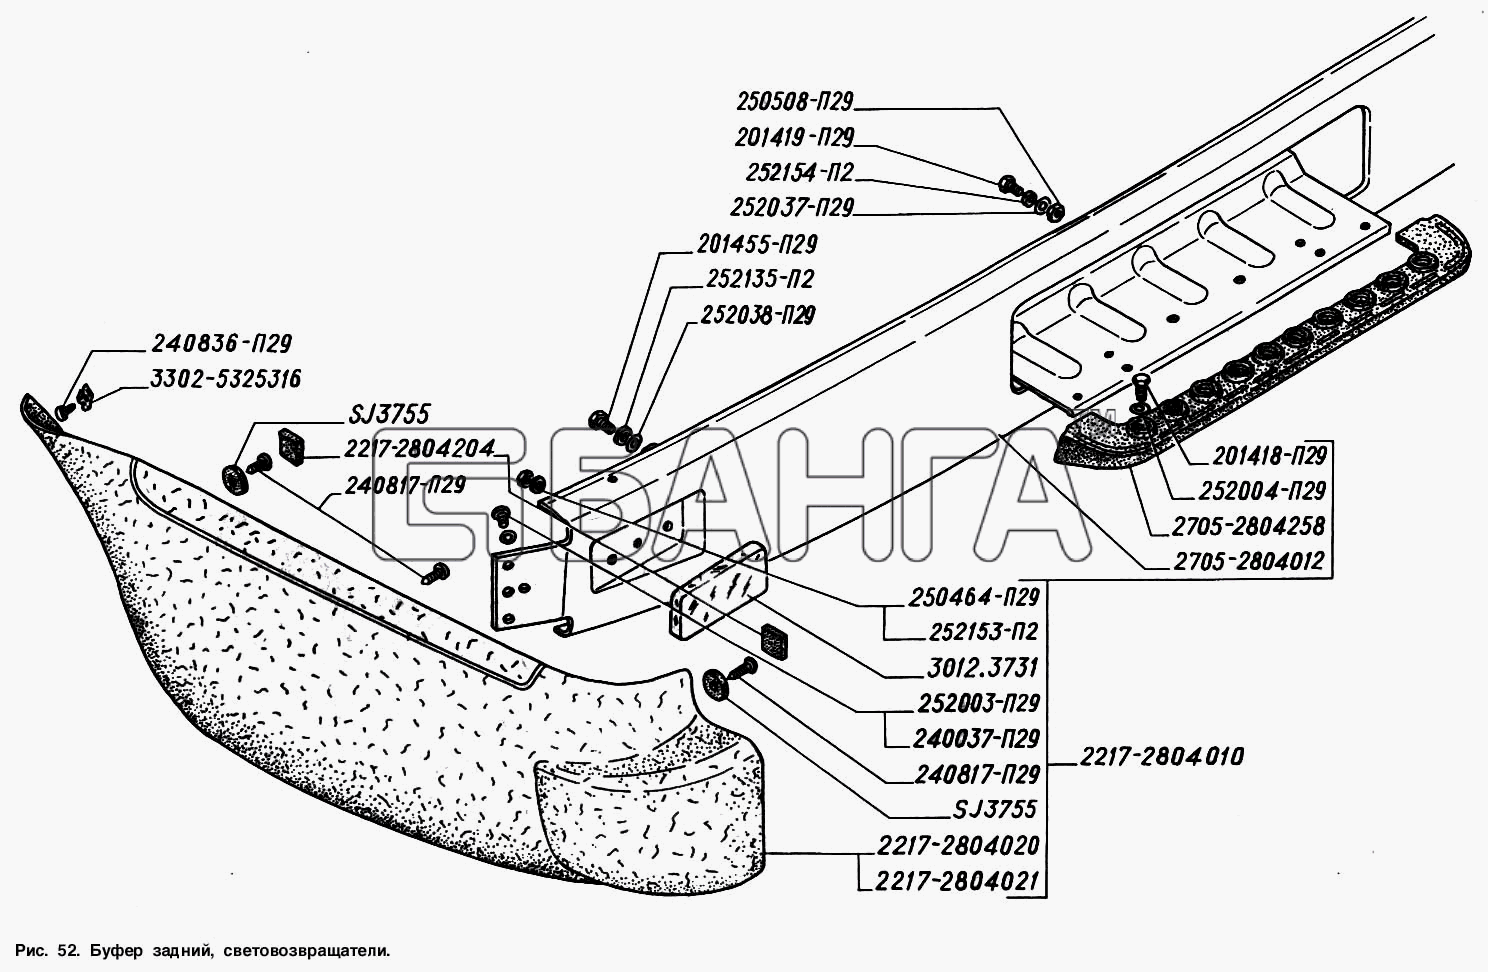 ГАЗ ГАЗ-2217 (Соболь) Схема Буфер задний световозвращатели-119